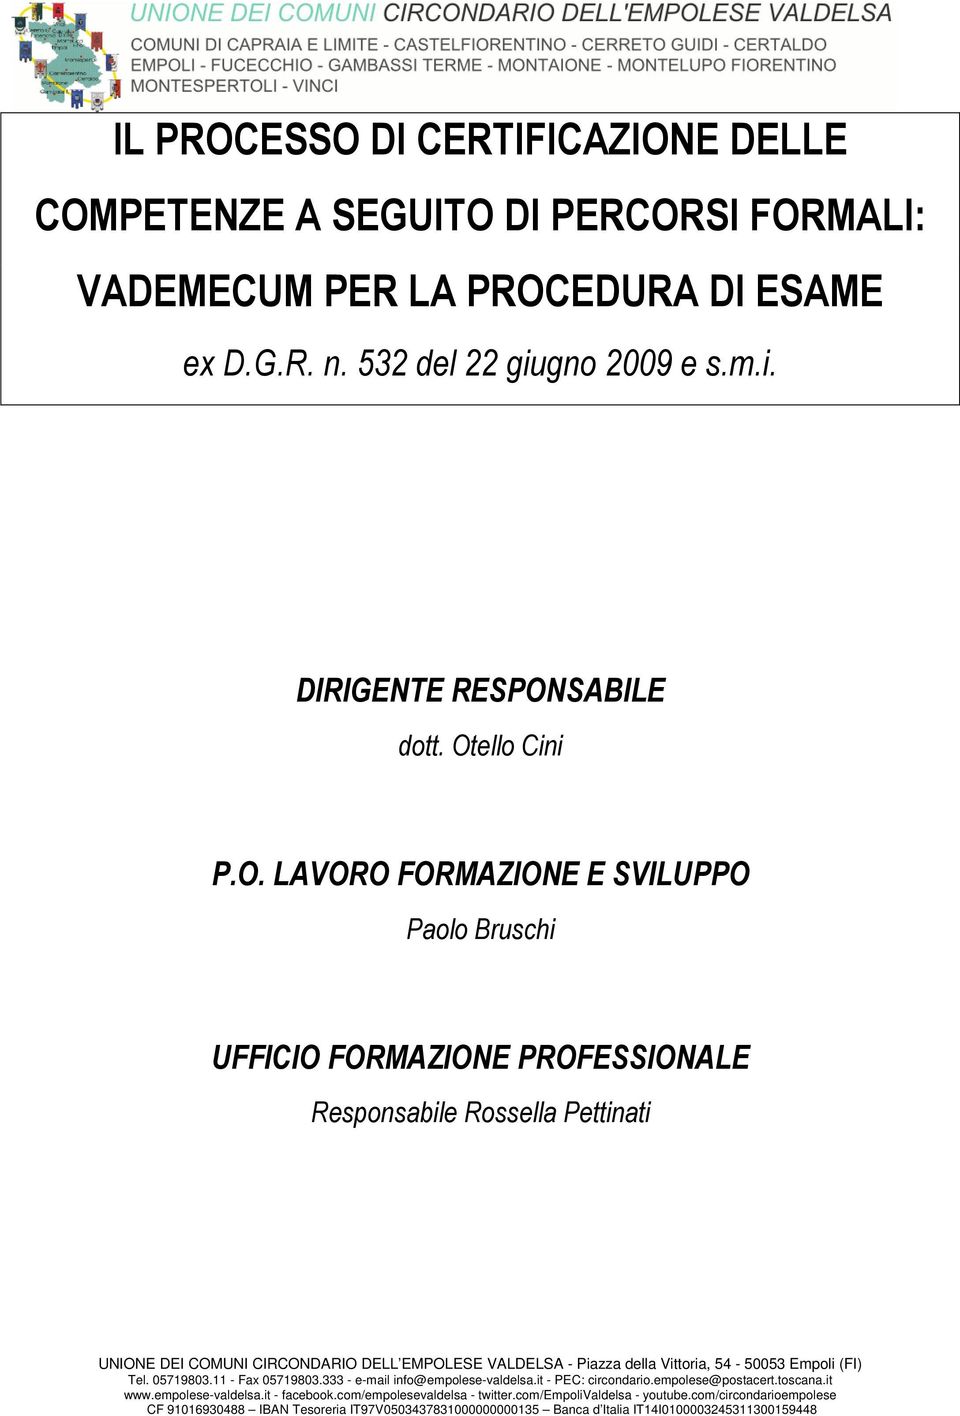 della Vittoria, 54-50053 Empoli (FI) Tel. 05719803.11 - Fax 05719803.333 - e-mail info@empolese-valdelsa.it - PEC: circondario.empolese@postacert.toscana.it www.empolese-valdelsa.it - facebook.